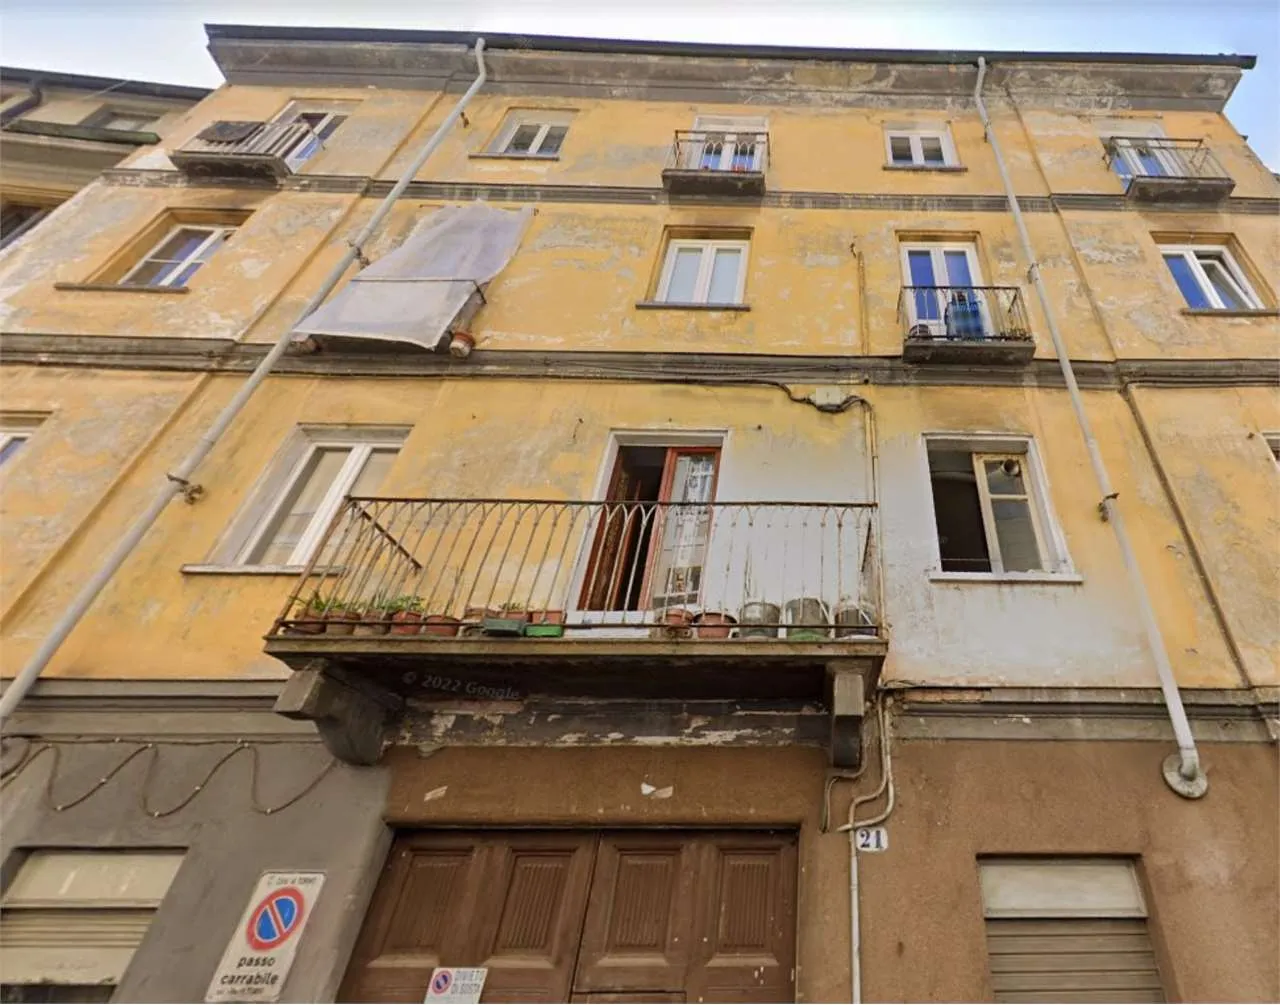 Immagine per Appartamento in asta a Torino via Cottolengo 21